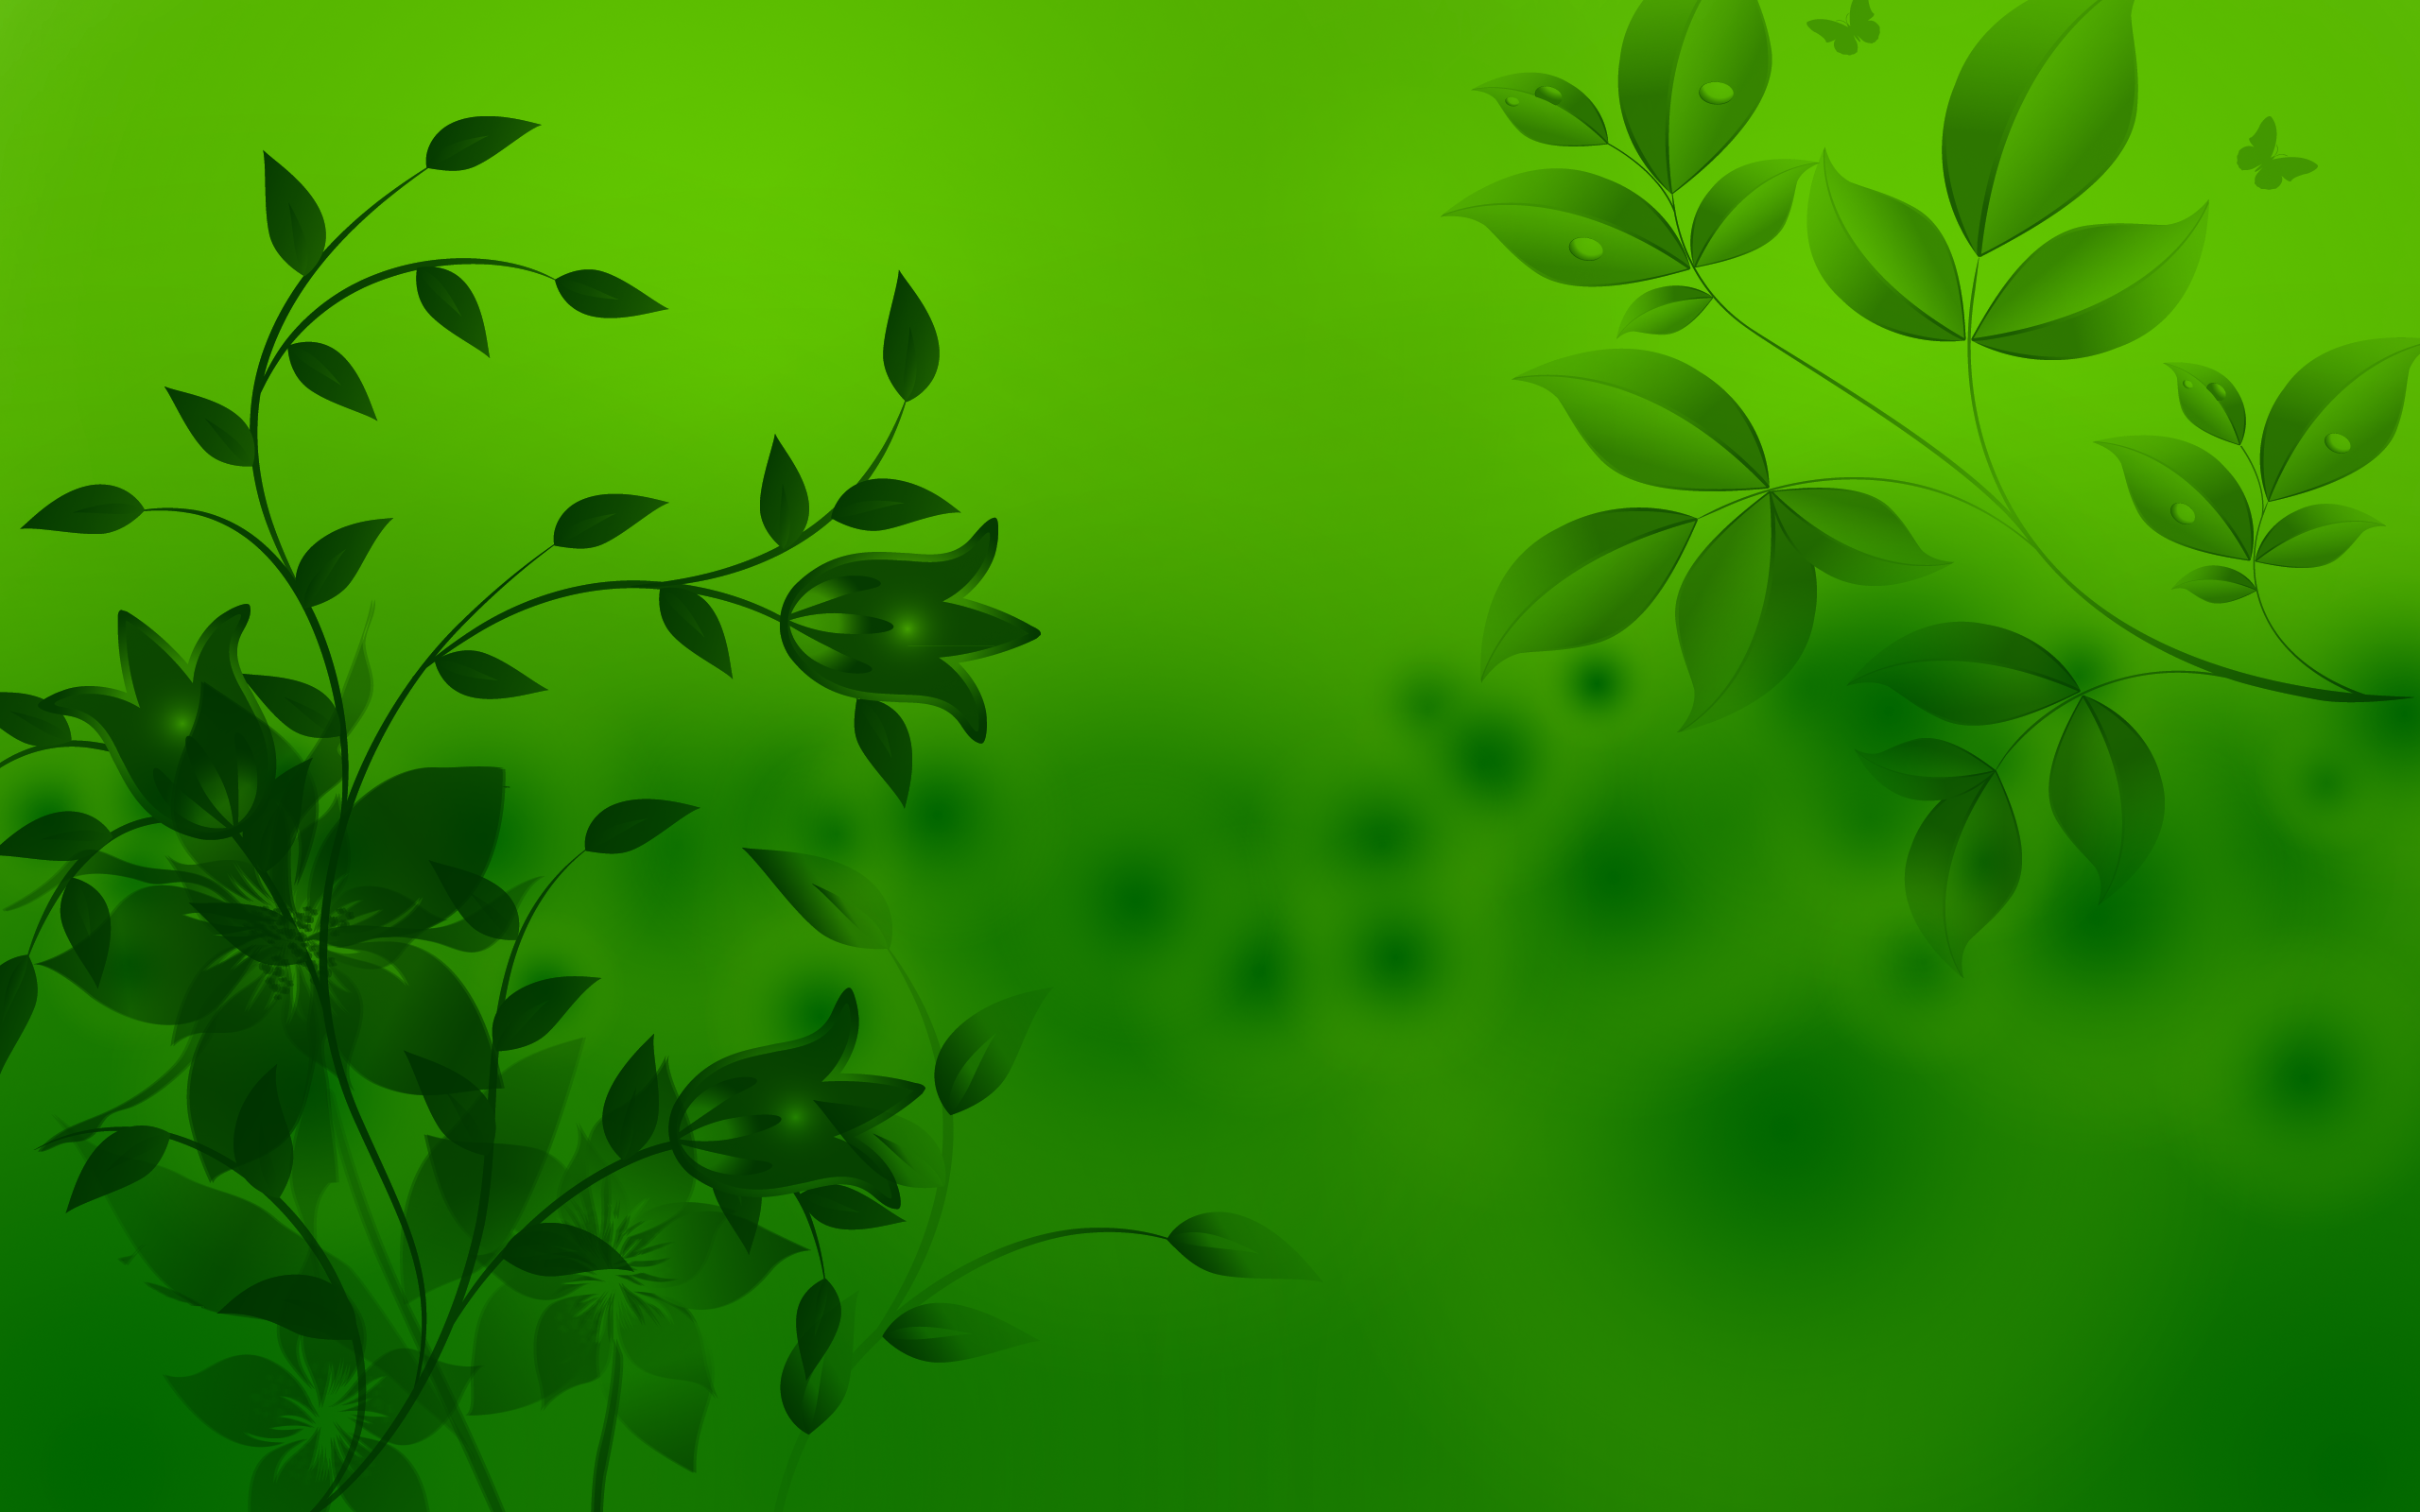 Với những ai yêu thích xanh lá cây, các hình ảnh nền xanh là một sự lựa chọn tuyệt vời để làm nền cho desktop hay thiết bị di động của bạn. Vui lòng đến với chúng tôi để tải miễn phí các hình ảnh nền xanh đẹp và chất lượng nhất.